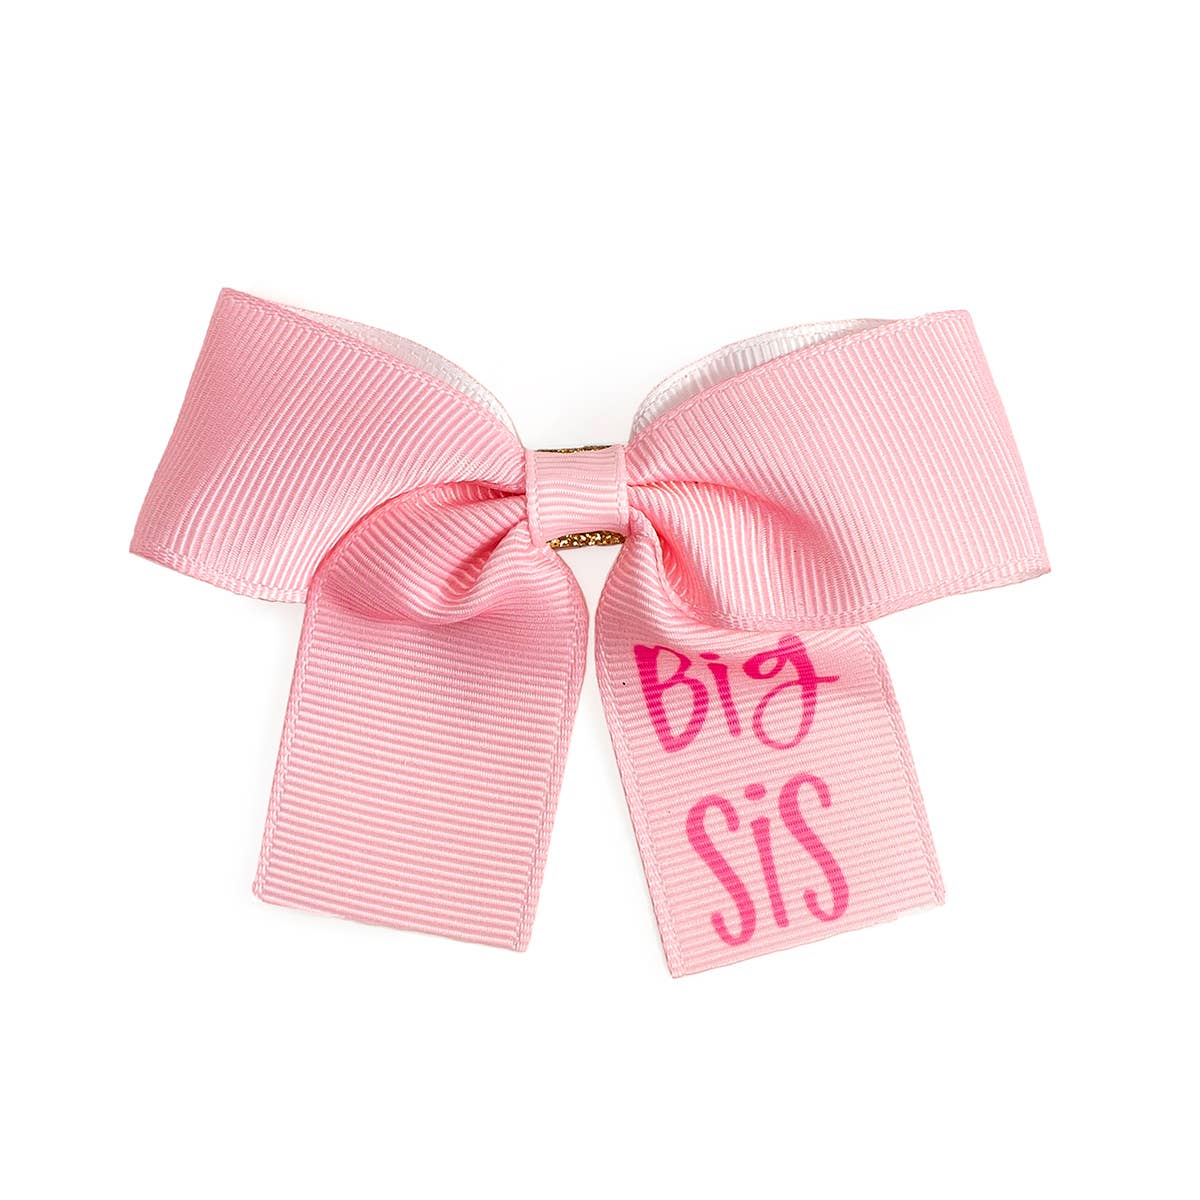 Big Sis Bow Clip - Pregnancy Announcement - Kids Hair Clip